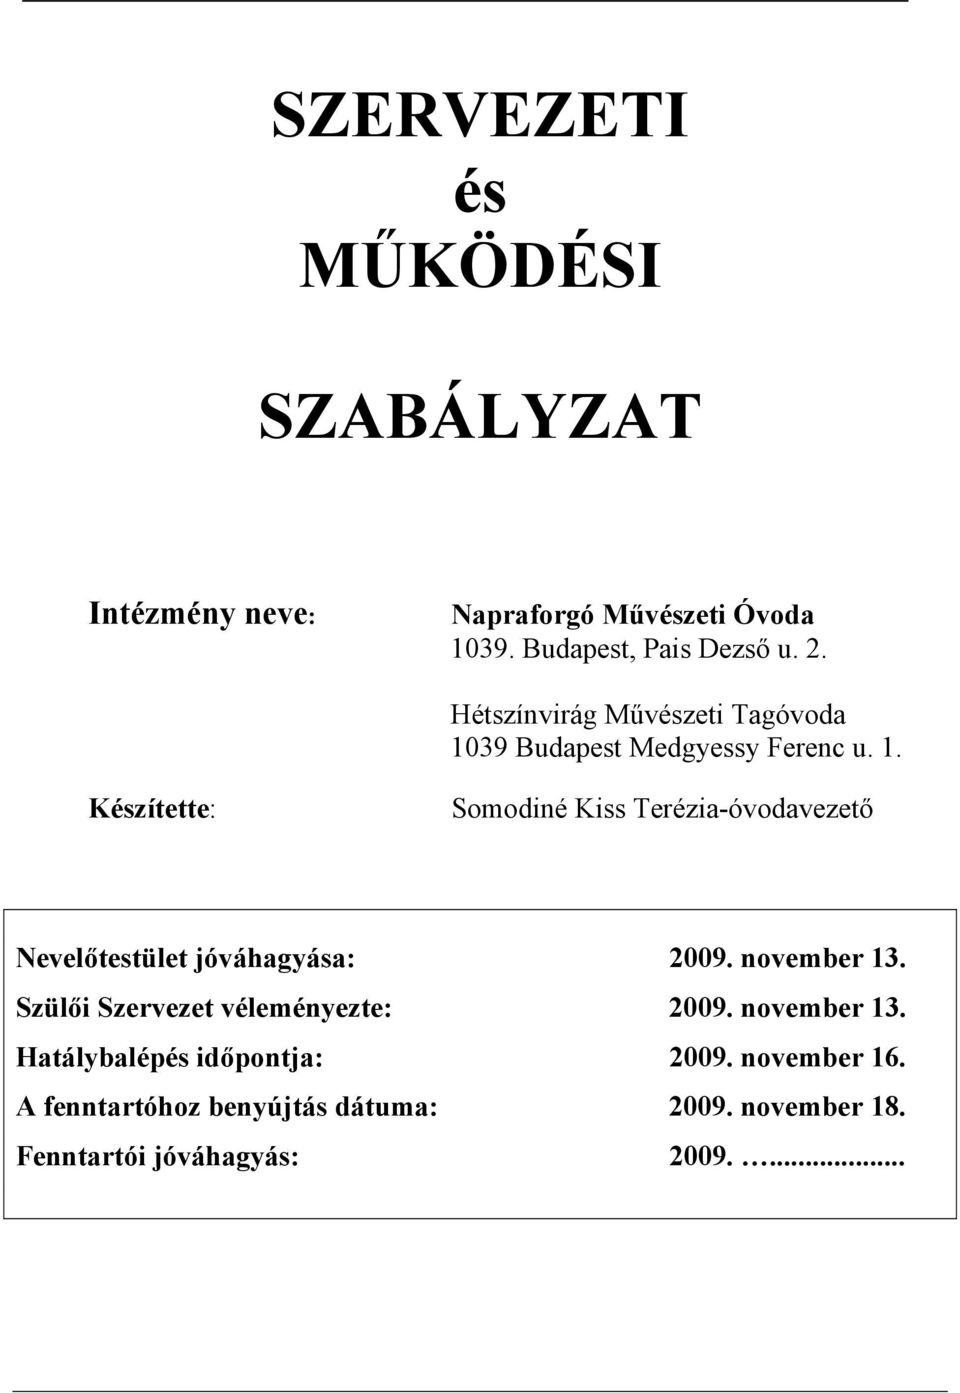 39 Budapest Medgyessy Ferenc u. 1.